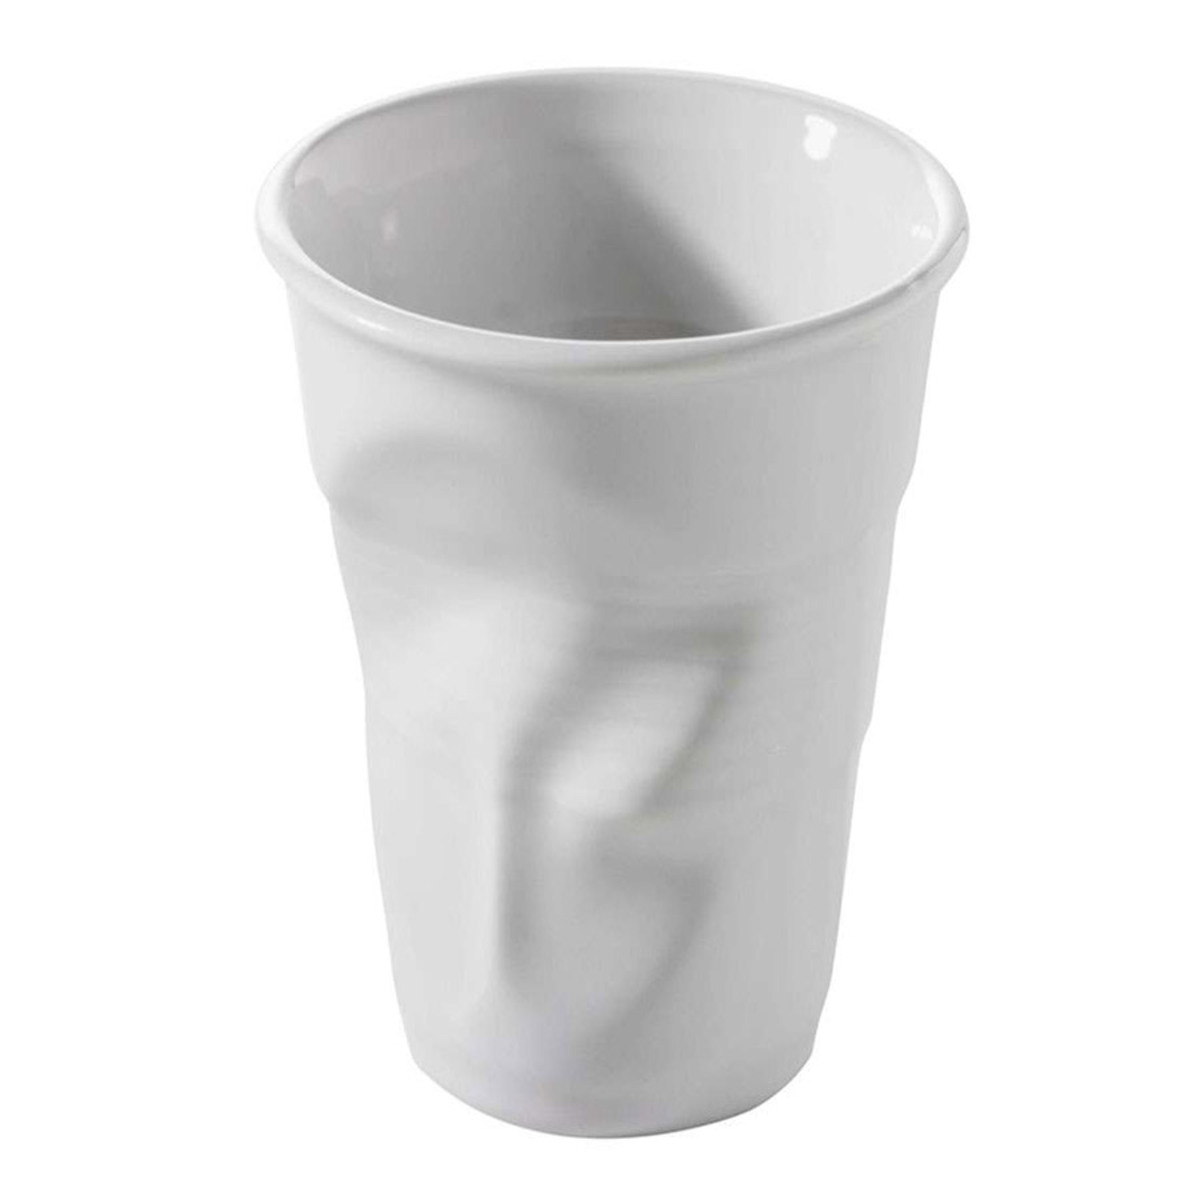 Gobelet froissé cappuccino en porcelaine couleur blanche Revol 18cl